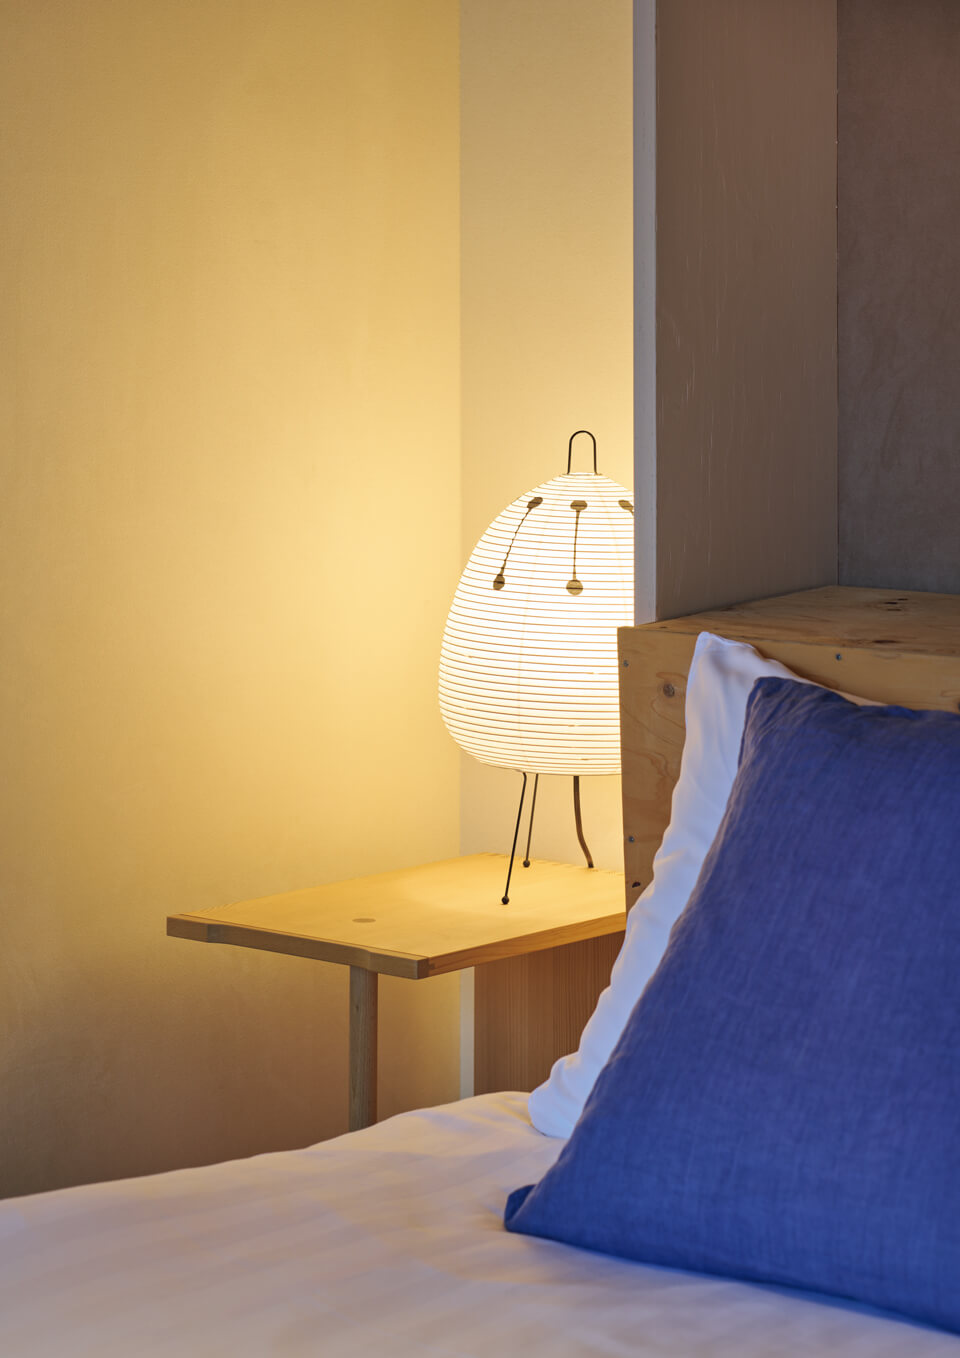 客室の壁面を見る。壁面に採用した「Ultrasuede® for Wallcovering」がベッドサイドに置かれた照明器具の 光を柔らかく反射し、客室を温かく包み込む